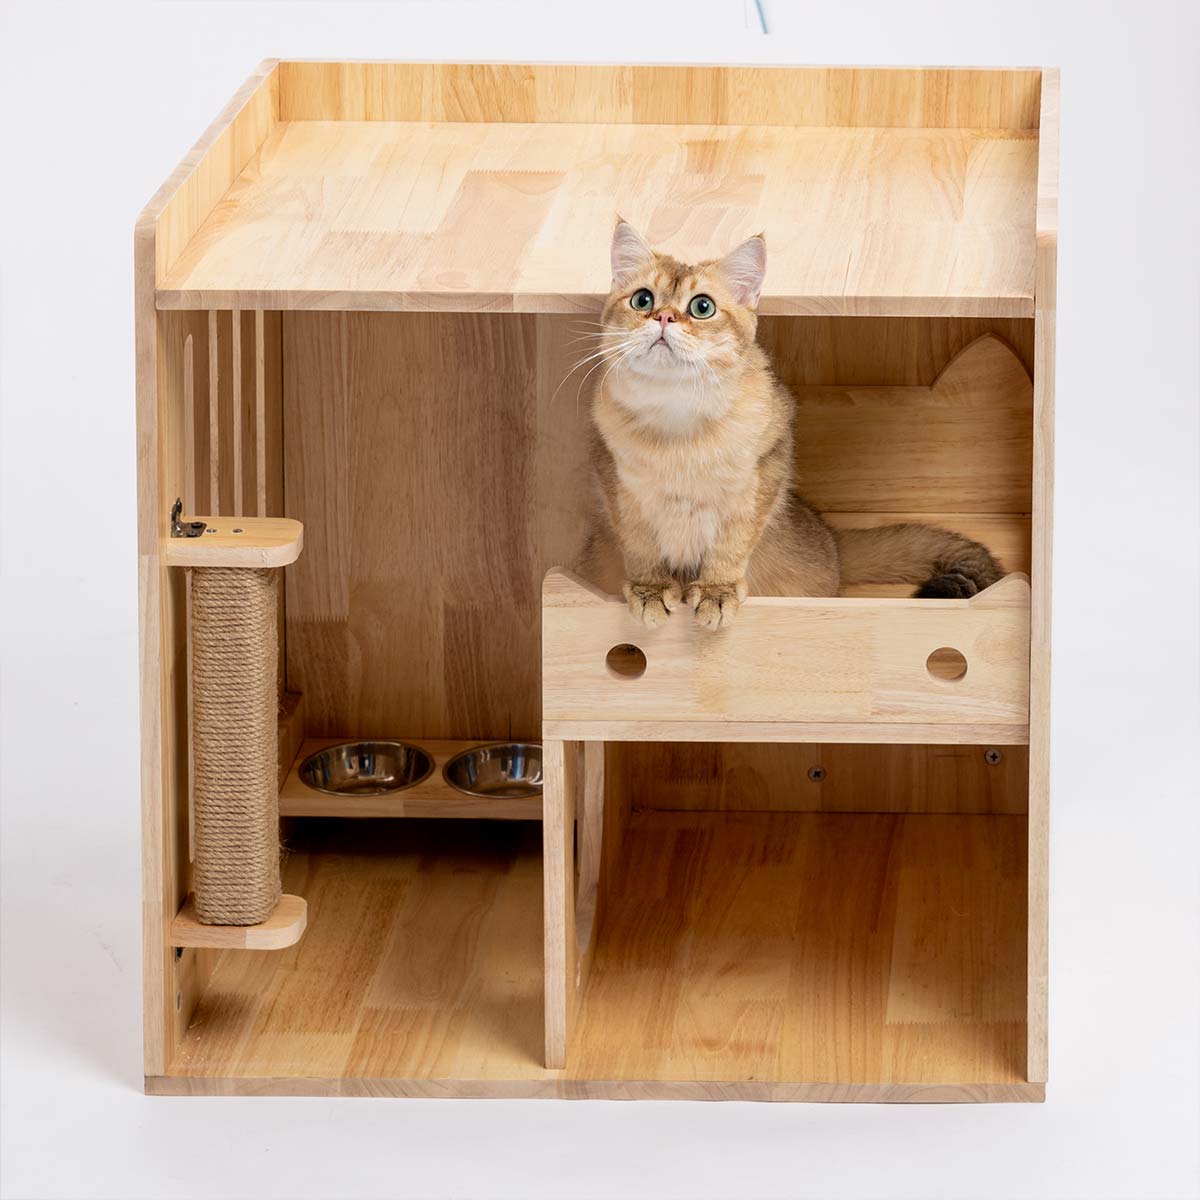 PETOMG Kumipuinen kissapuu, puinen kissan häkki, kissatorni, kissan talo –  petomg